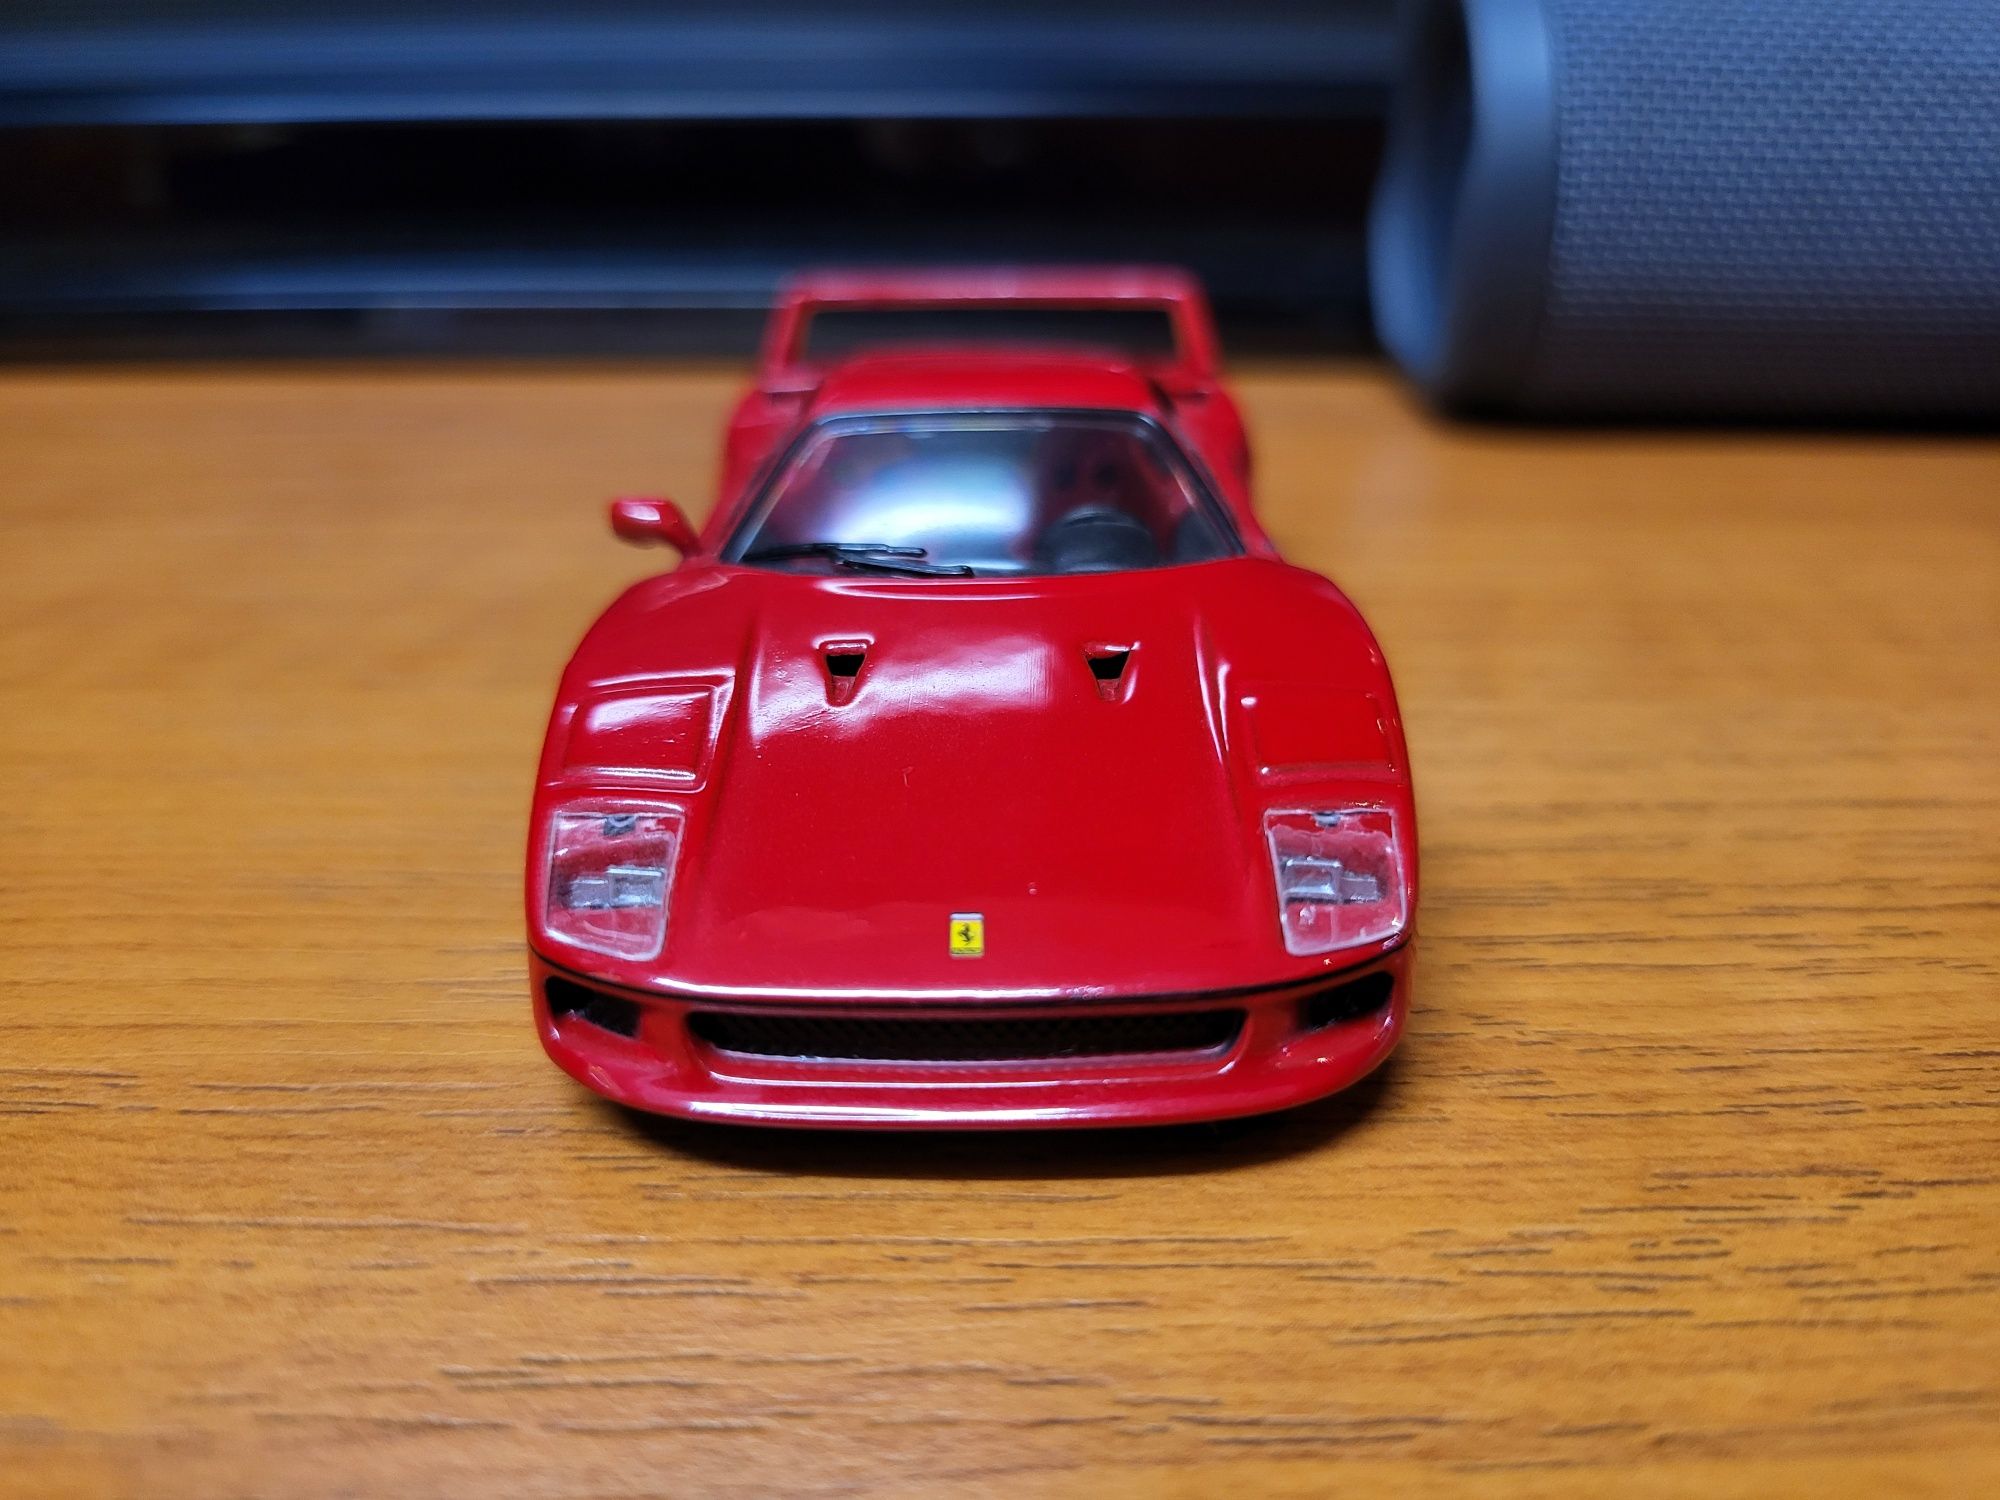 Macheta Ferrari F40, scara 1 43